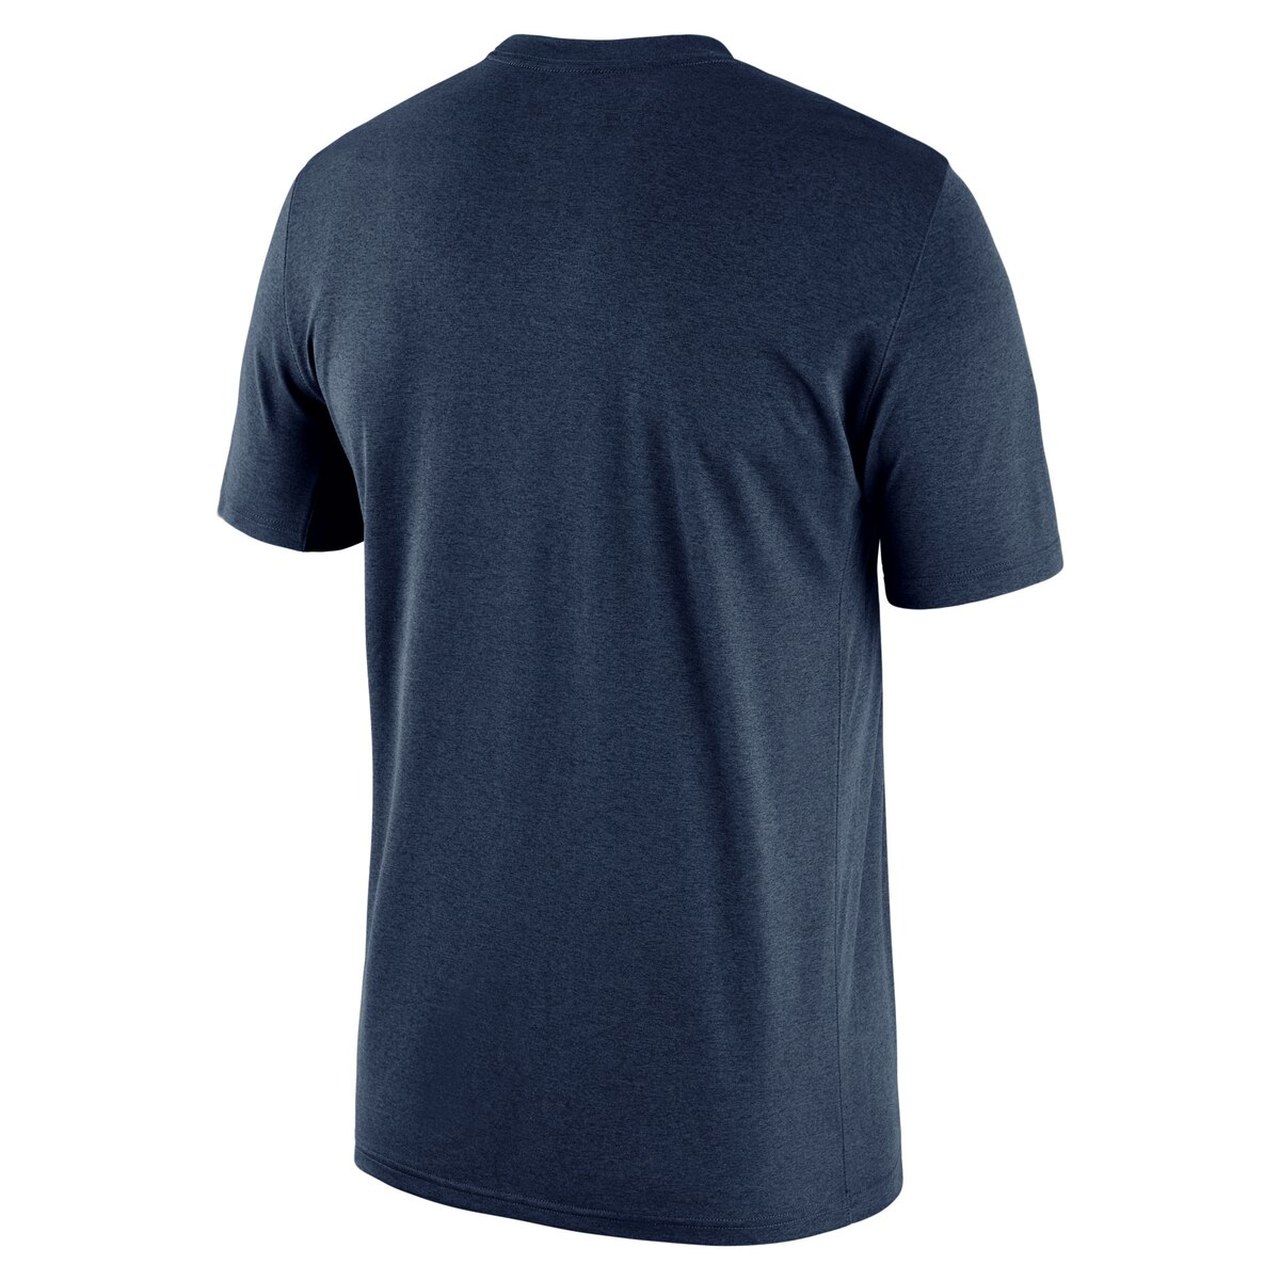 Nike, Shirts, Nike Drifit New York Yankees Polo Shirt